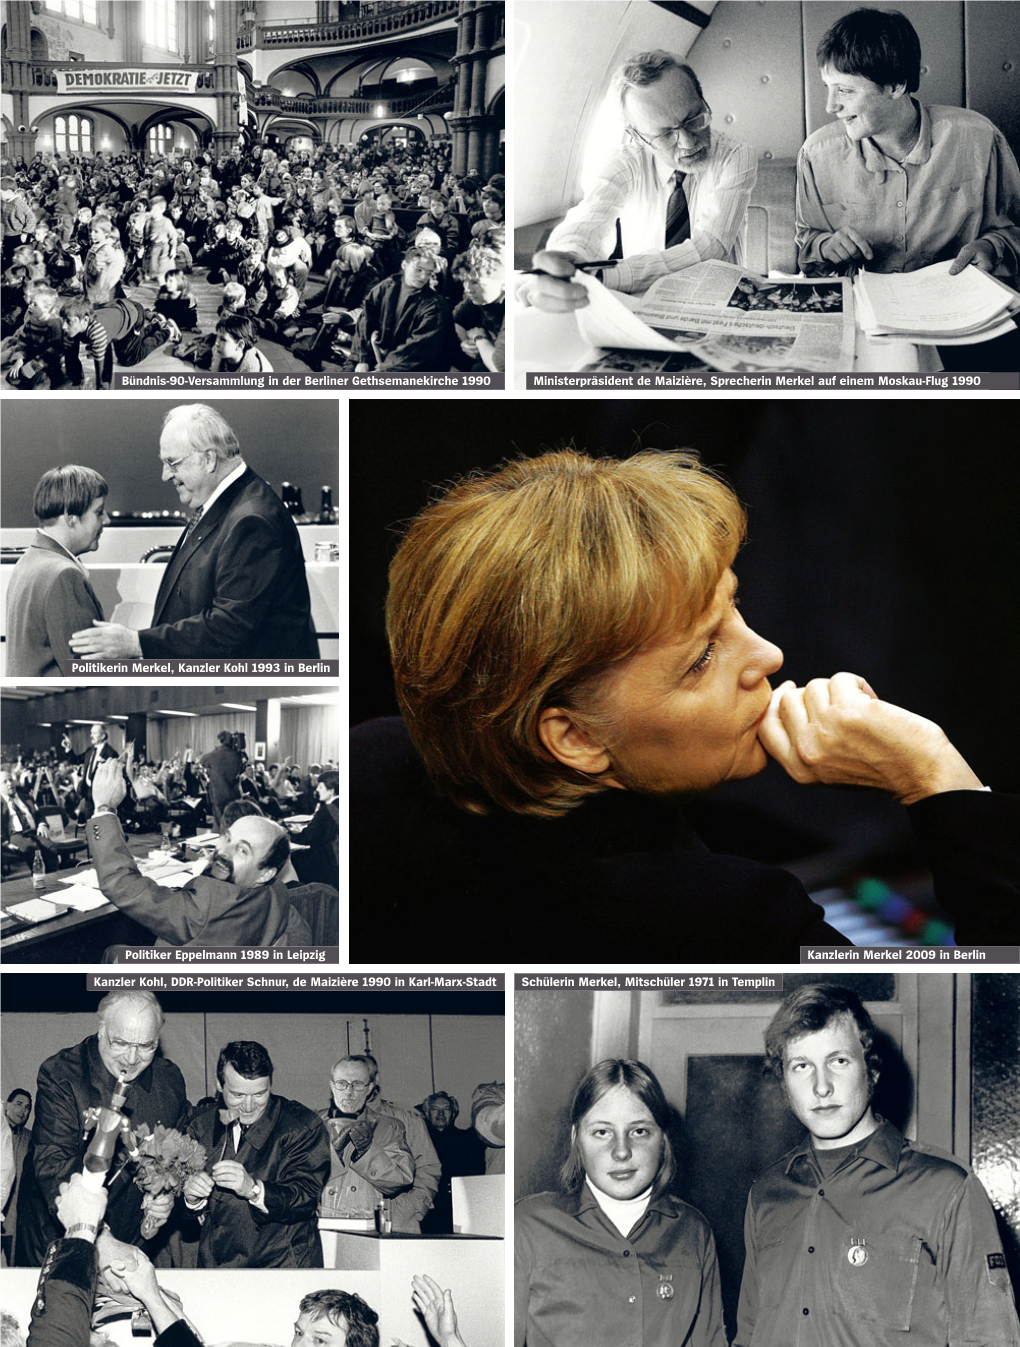 Bündnis-90-Versammlung in Der Berliner Gethsemanekirche 1990 Ministerpräsident De Maizière, Sprecherin Merkel Auf Einem Moskau-Flug 1990